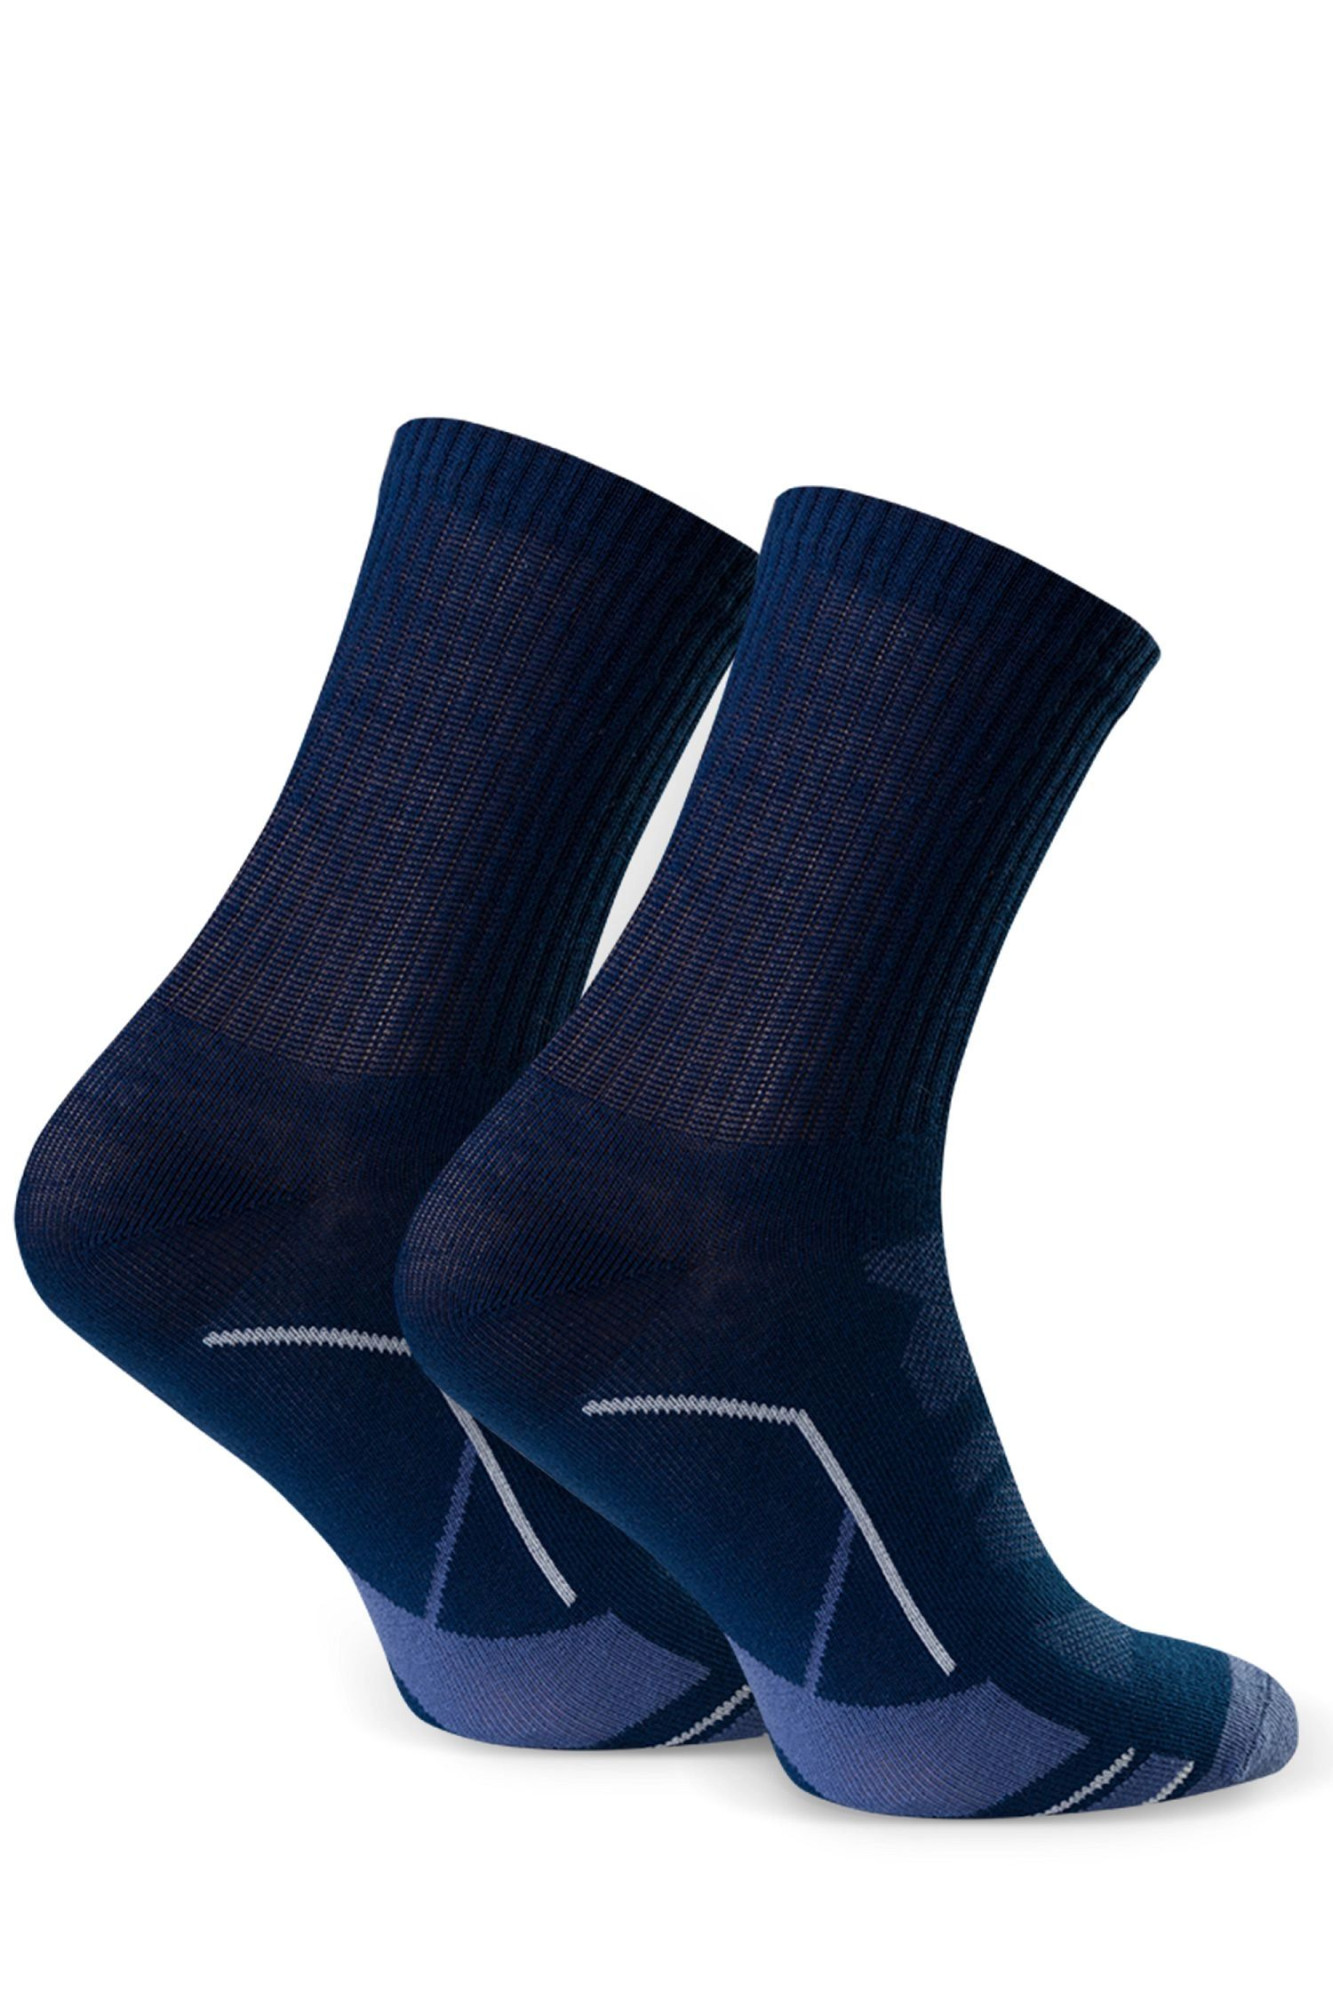 Dětské ponožky 022 318 blue - Steven tmavě modrá 35/37